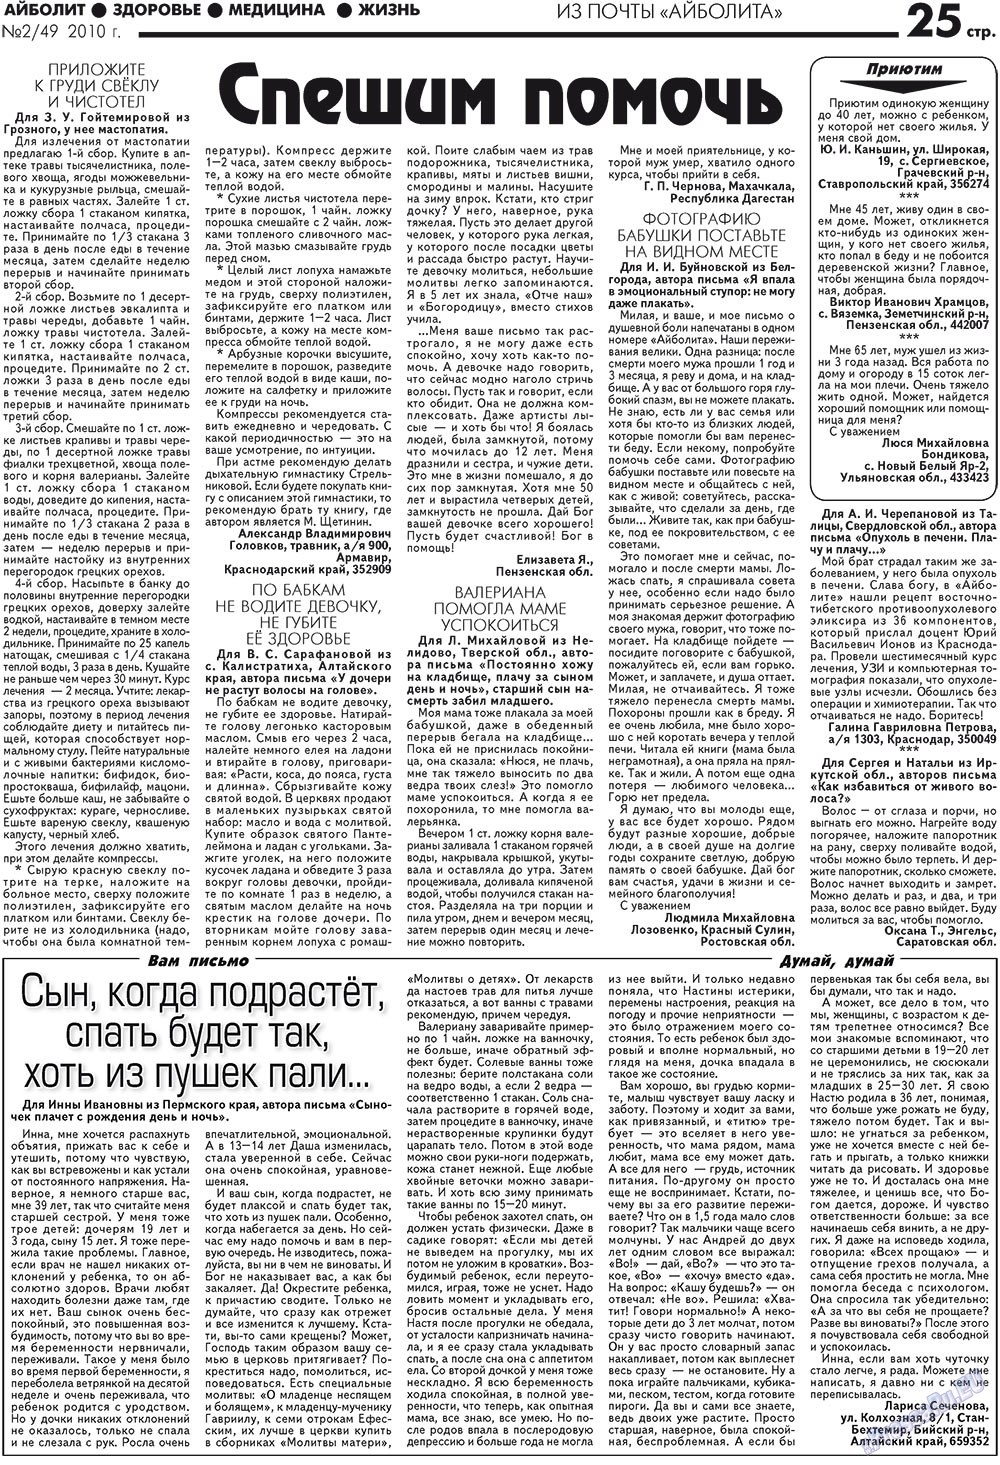 АйБолит, газета. 2010 №2 стр.25